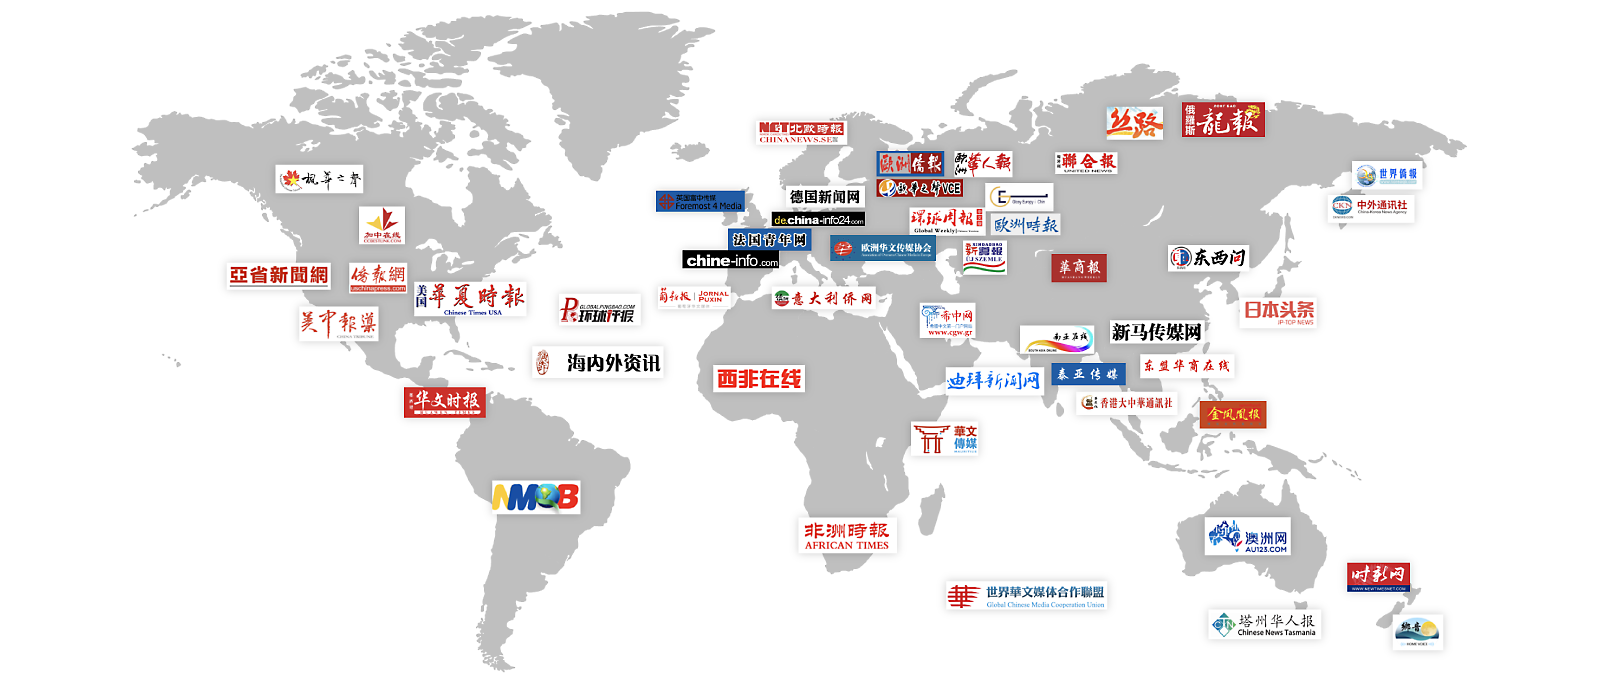 Mapa del mundo con más de 20 logotipos de sitios web chinos que tienen como objetivo la diáspora china global.